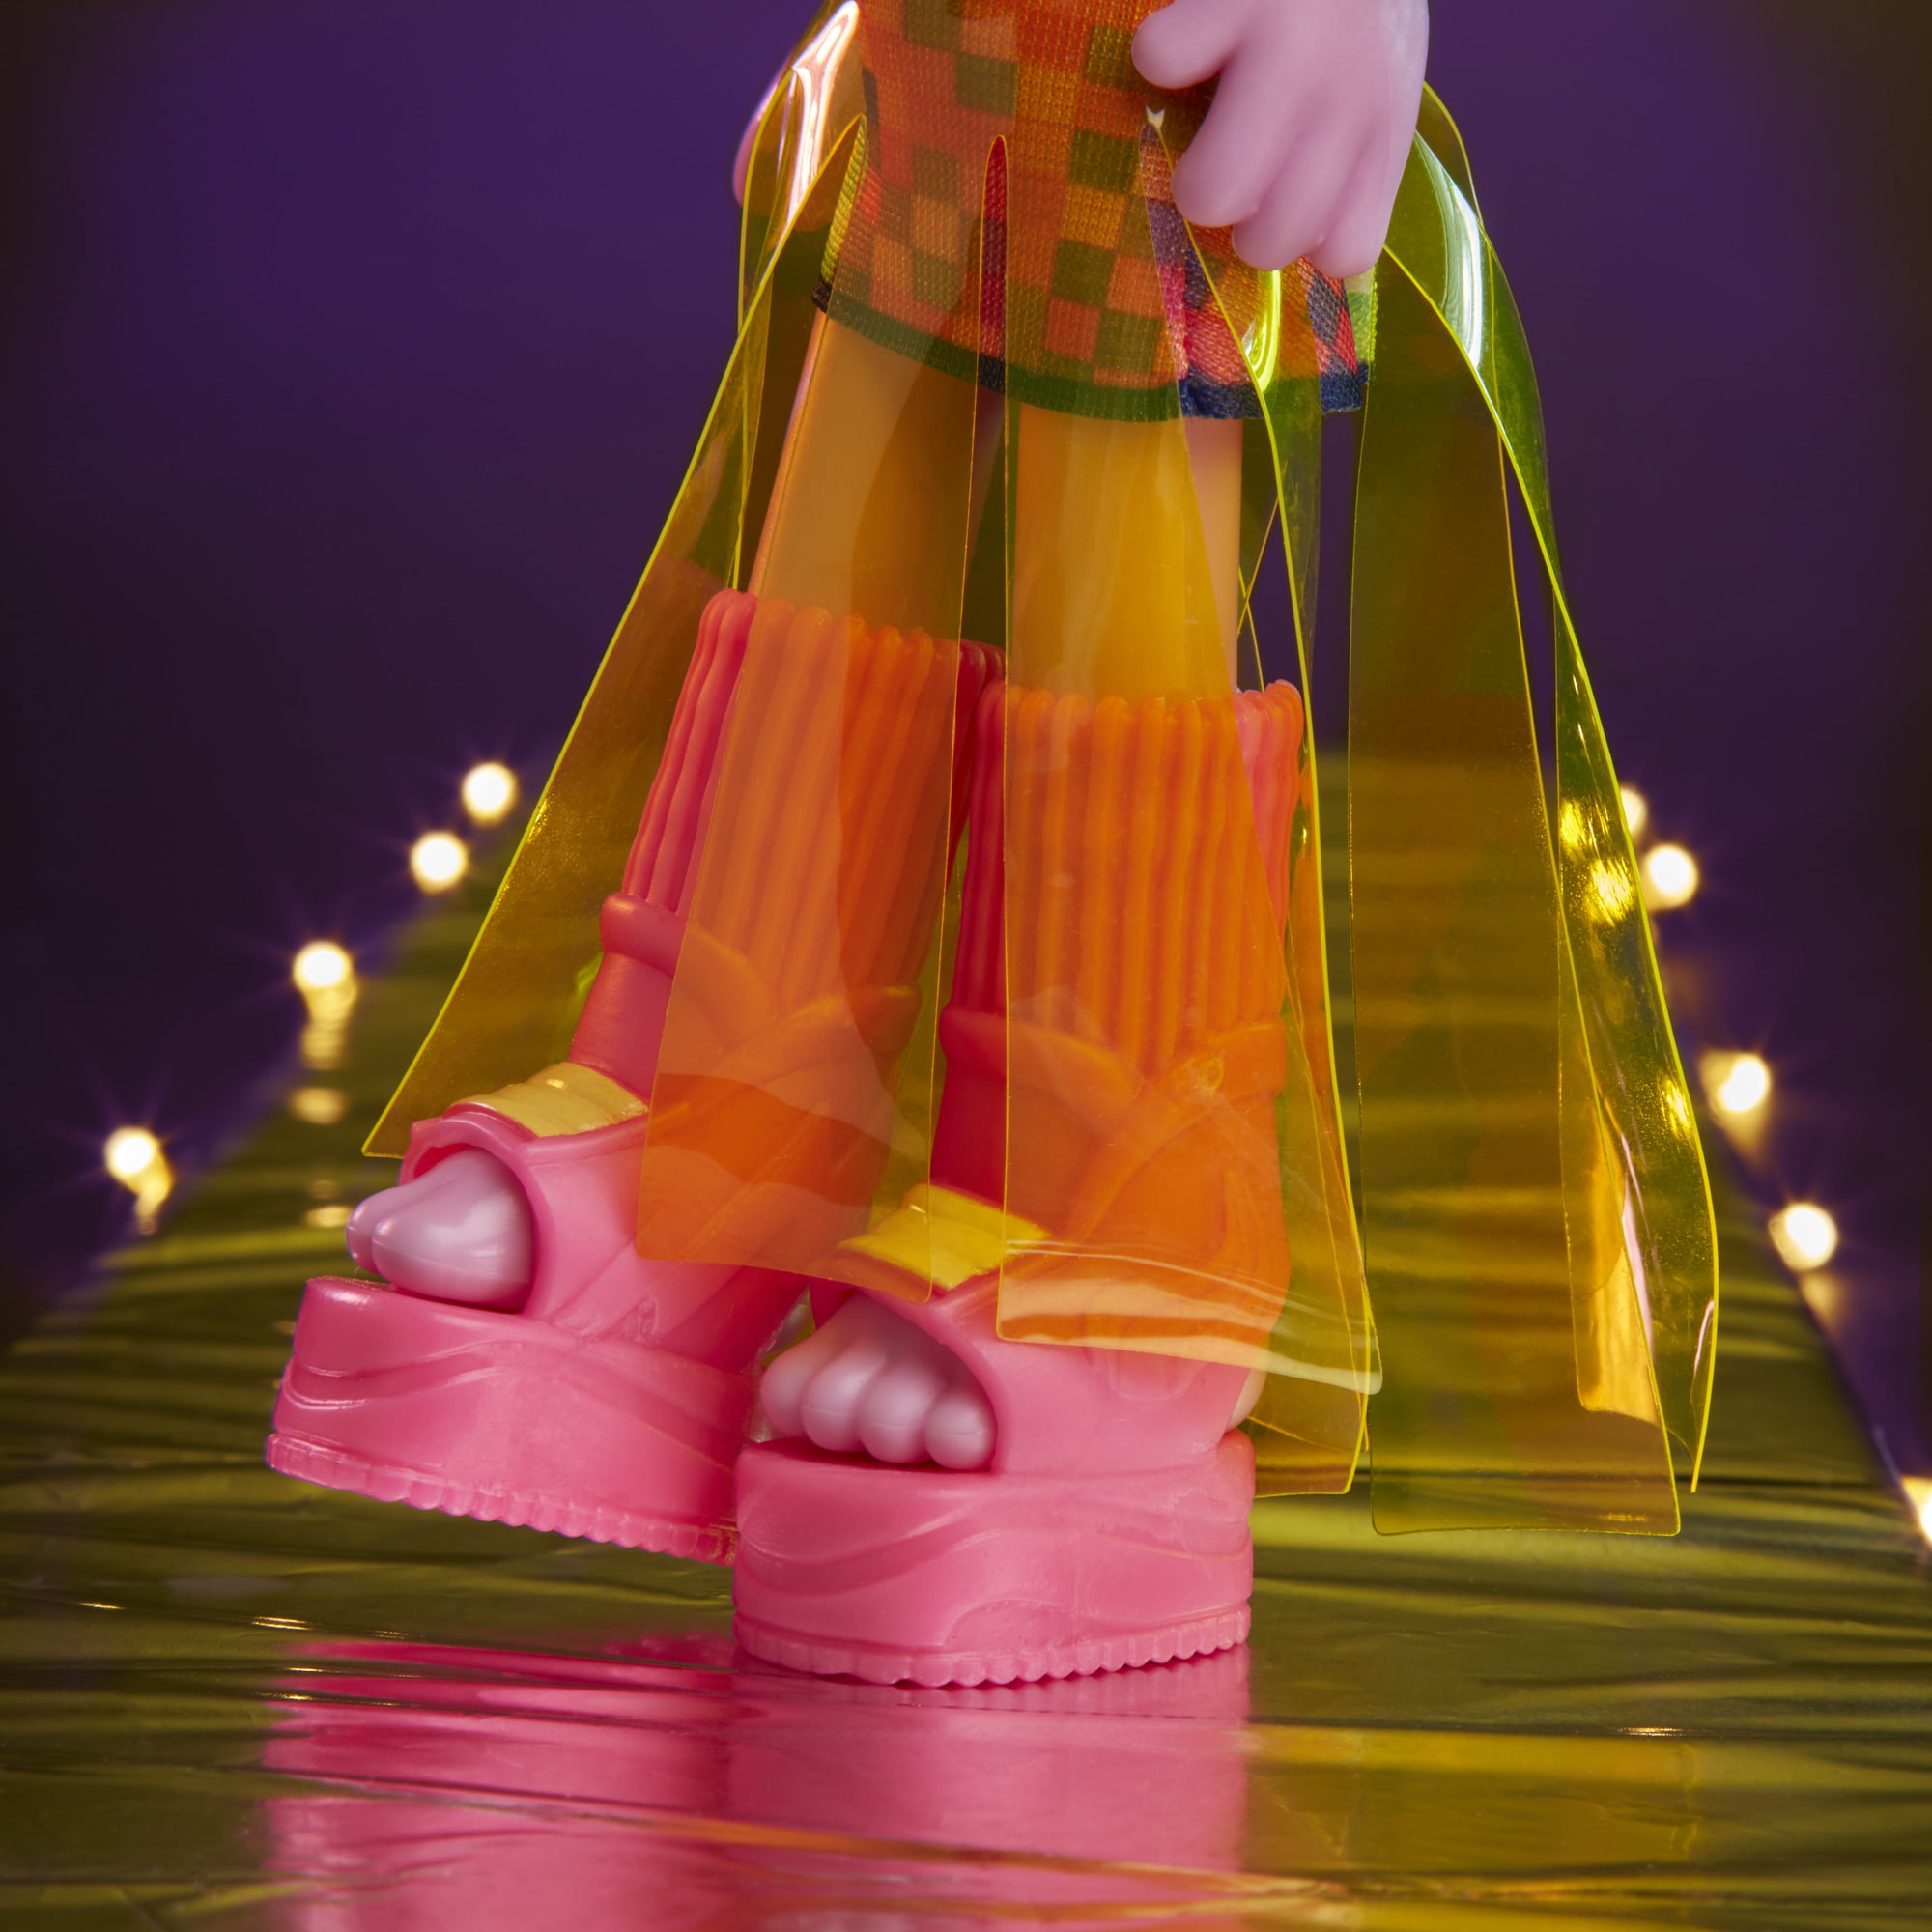  Trolls DreamWorks Glam Poppy Fashion Doll with Dress